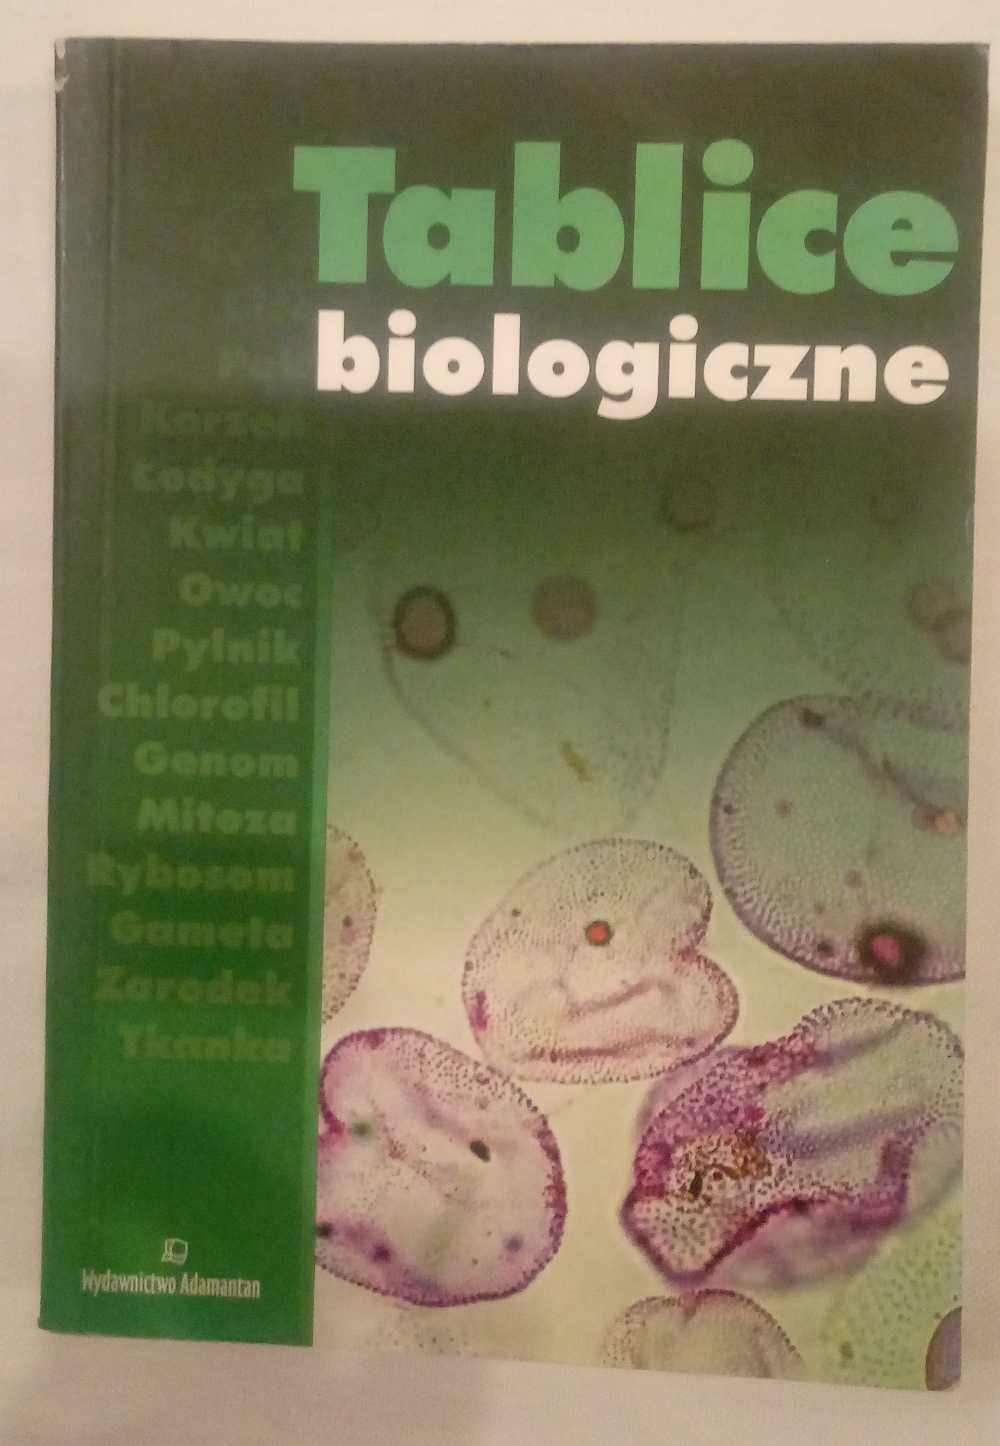 Tablice biologiczne wydawnictwo Adamantan